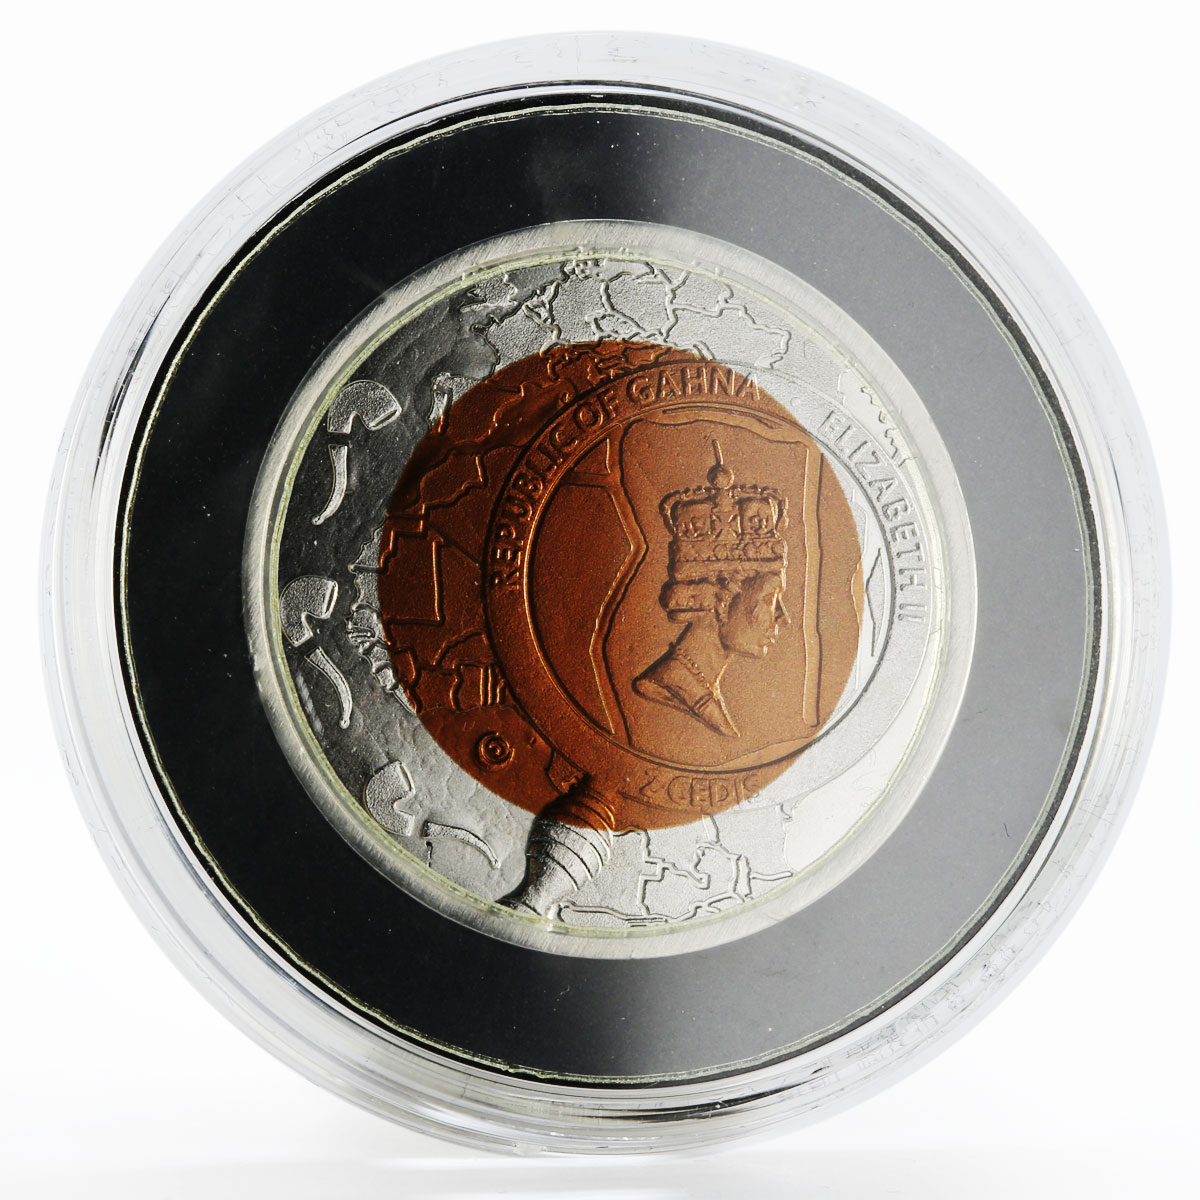 Ghana 5 cedis Sherlock Holmes Silver plated Titanium bimetallic coin 2017